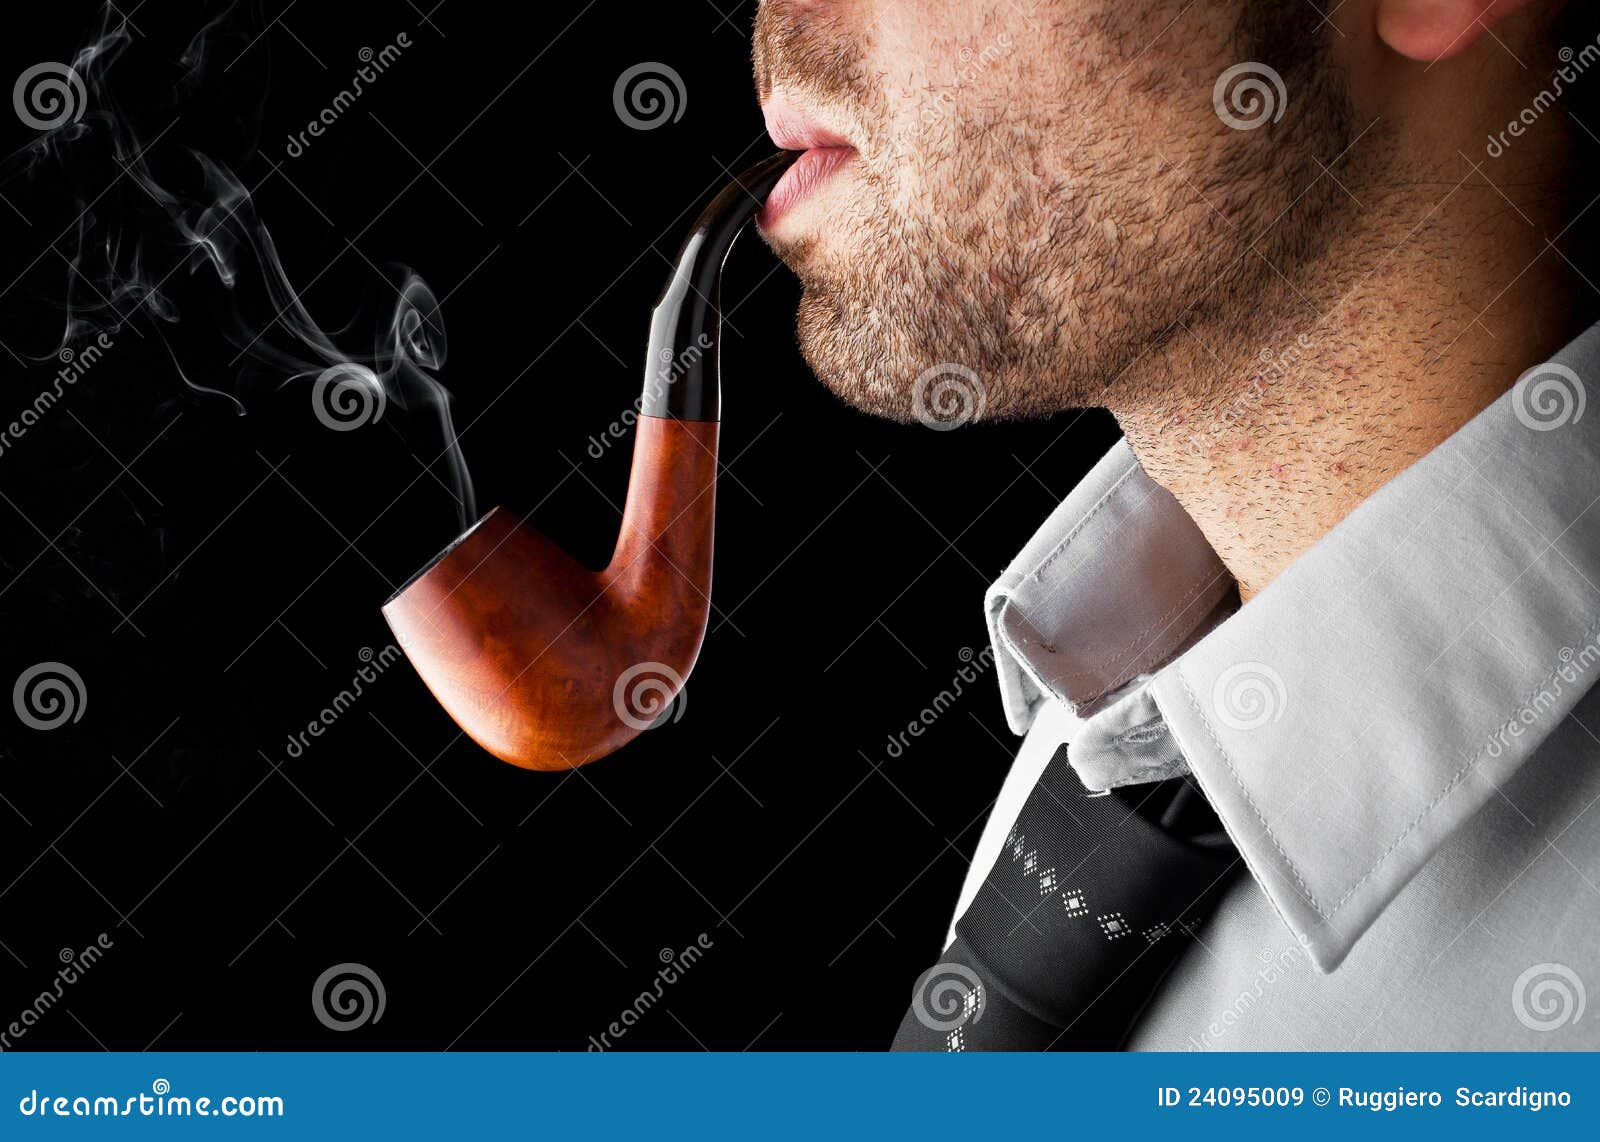 Трубка через рот. Курительная трубка во рту. Дымящаяся трубка.